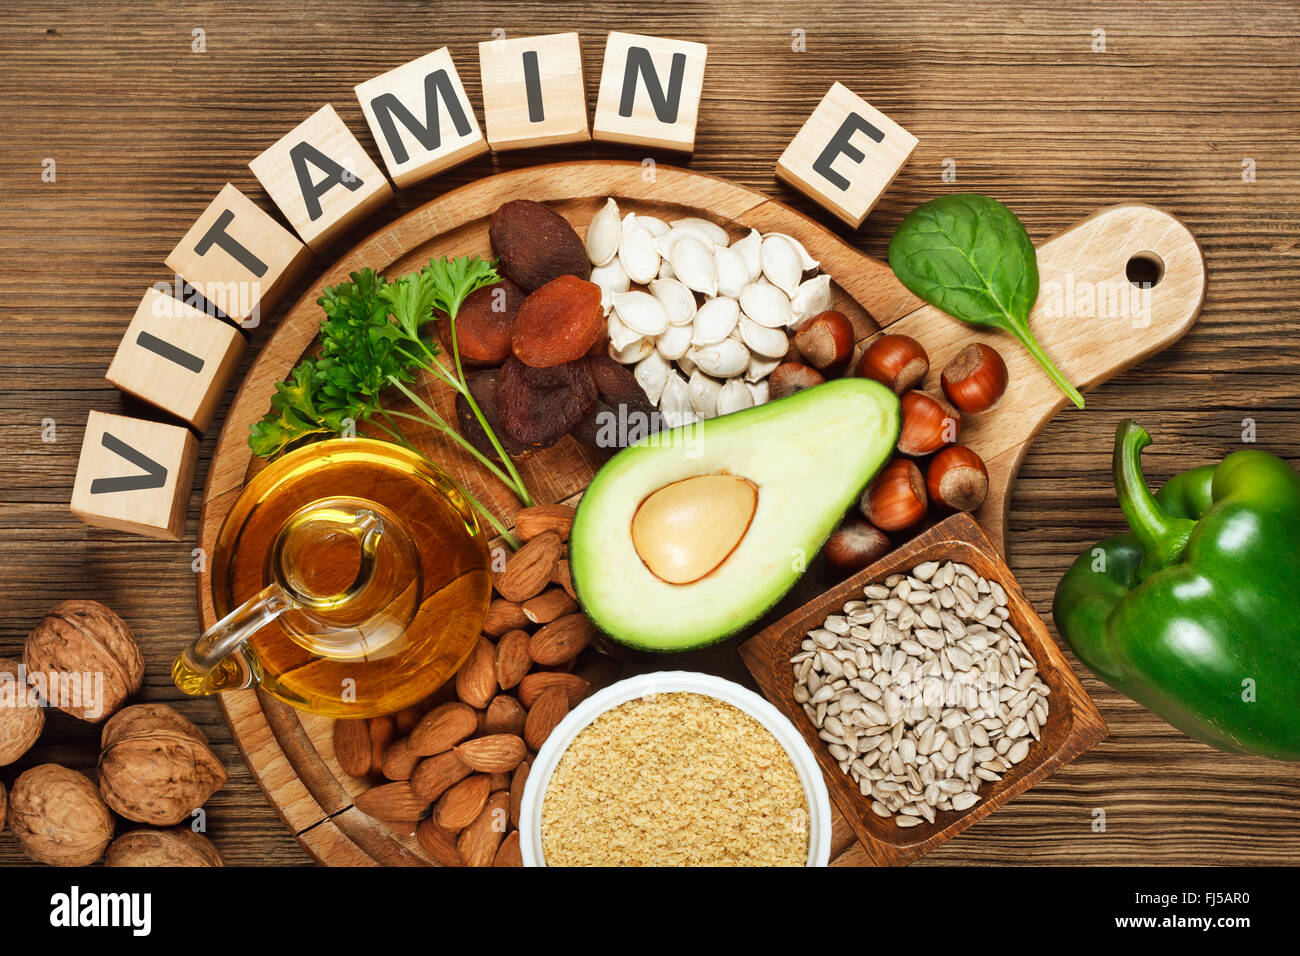 Foods rich in vitamin E Stock Photo